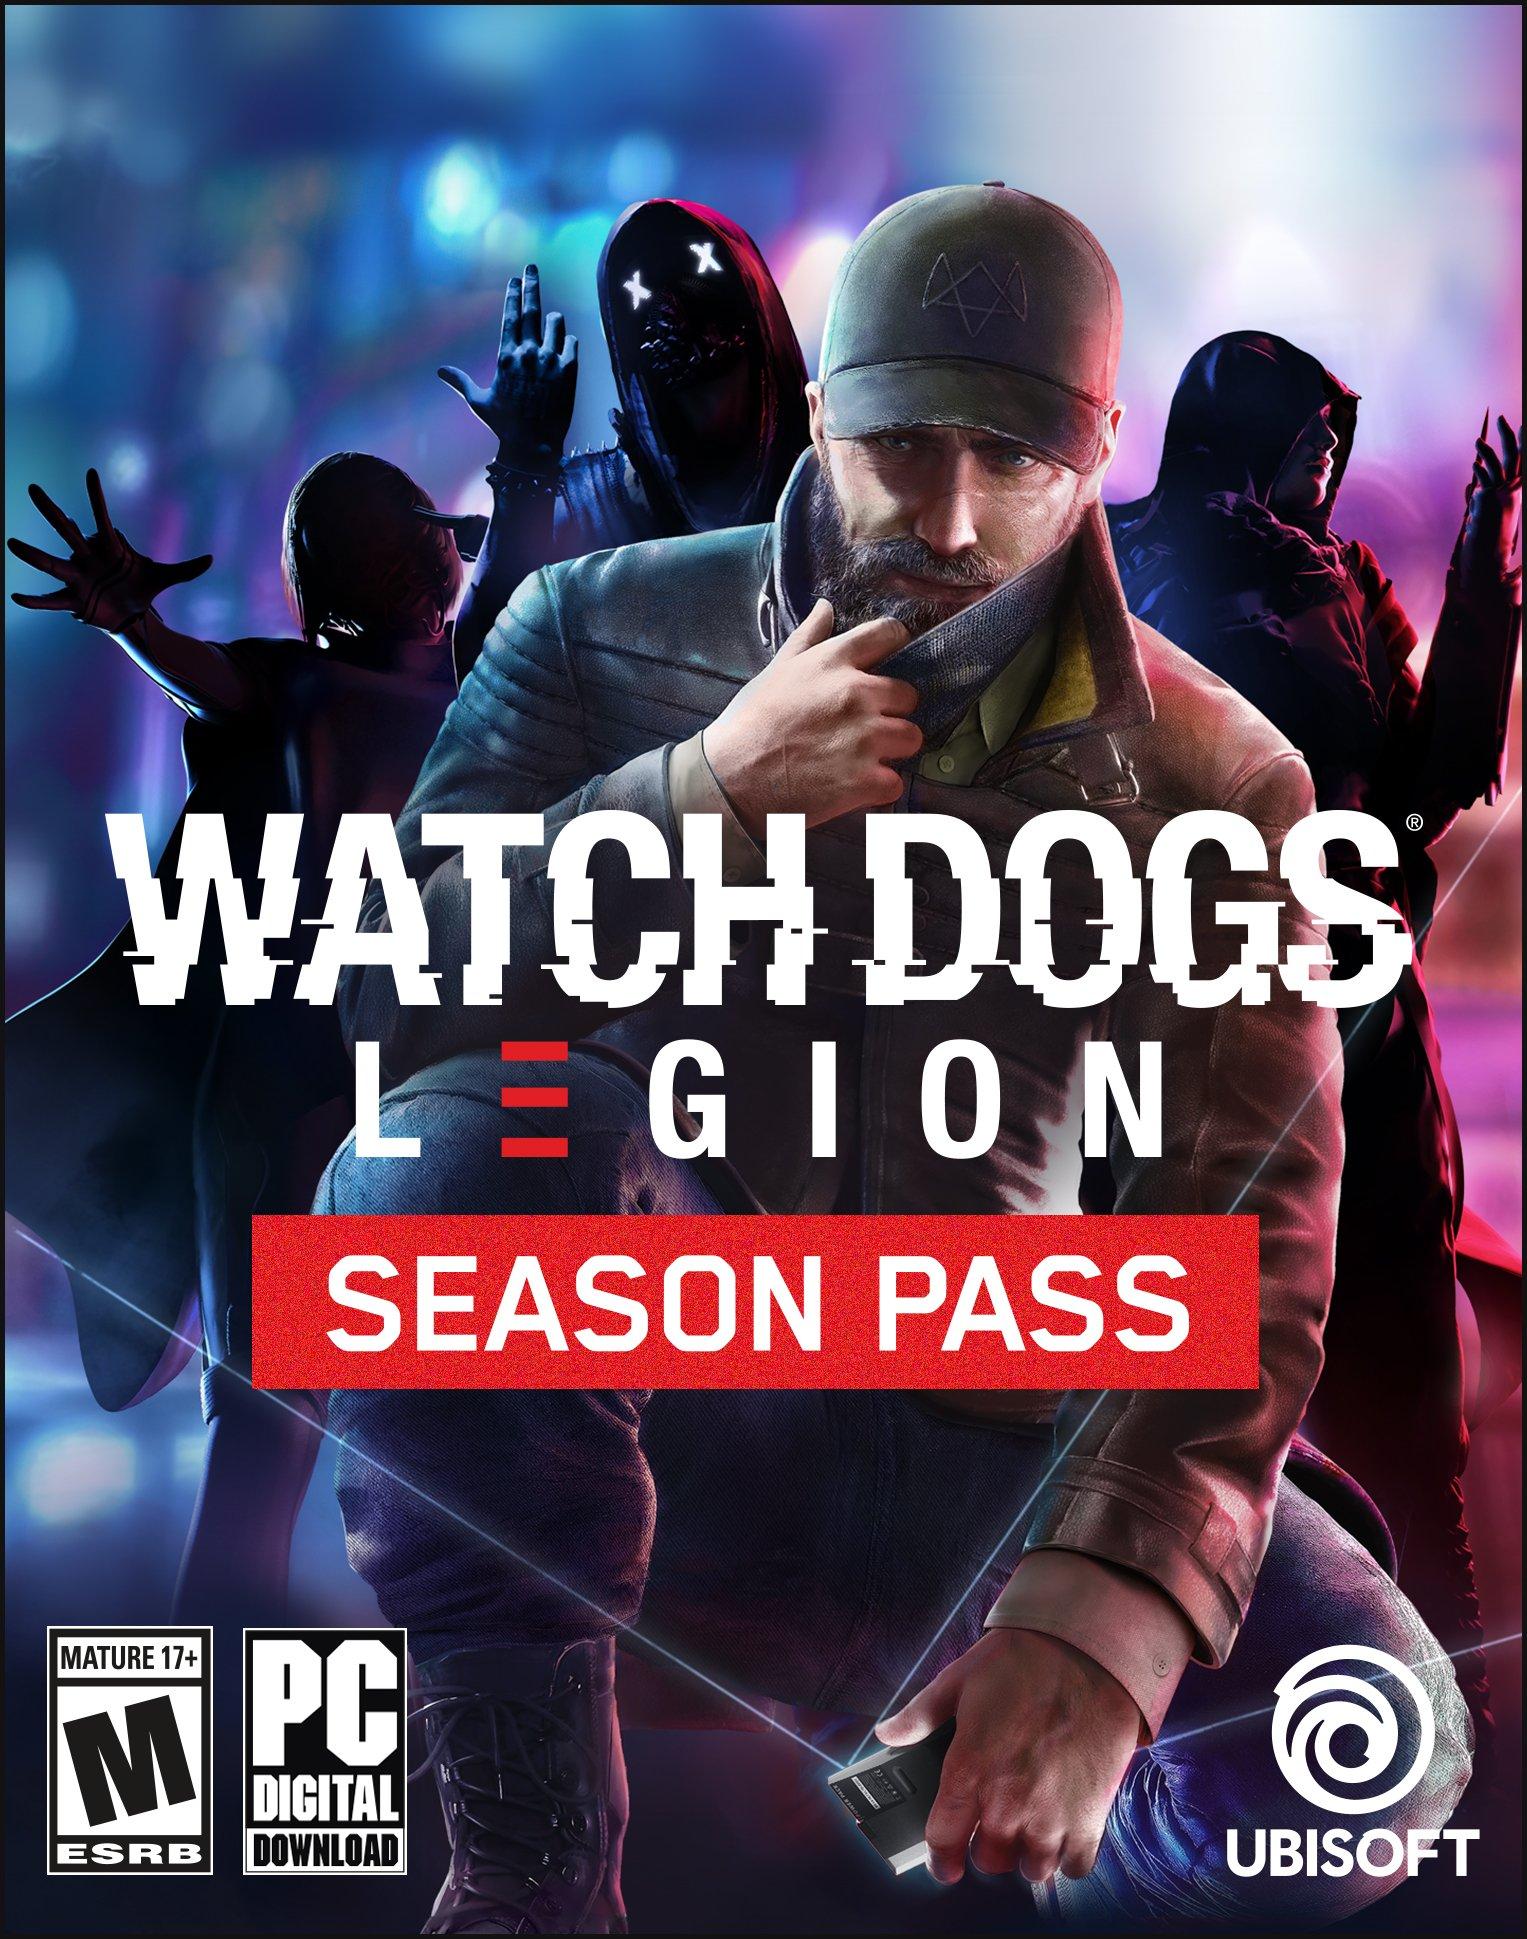 Conteúdo adicional de Watch Dogs Legion, Bloodline, já está disponível;  confira as novidades